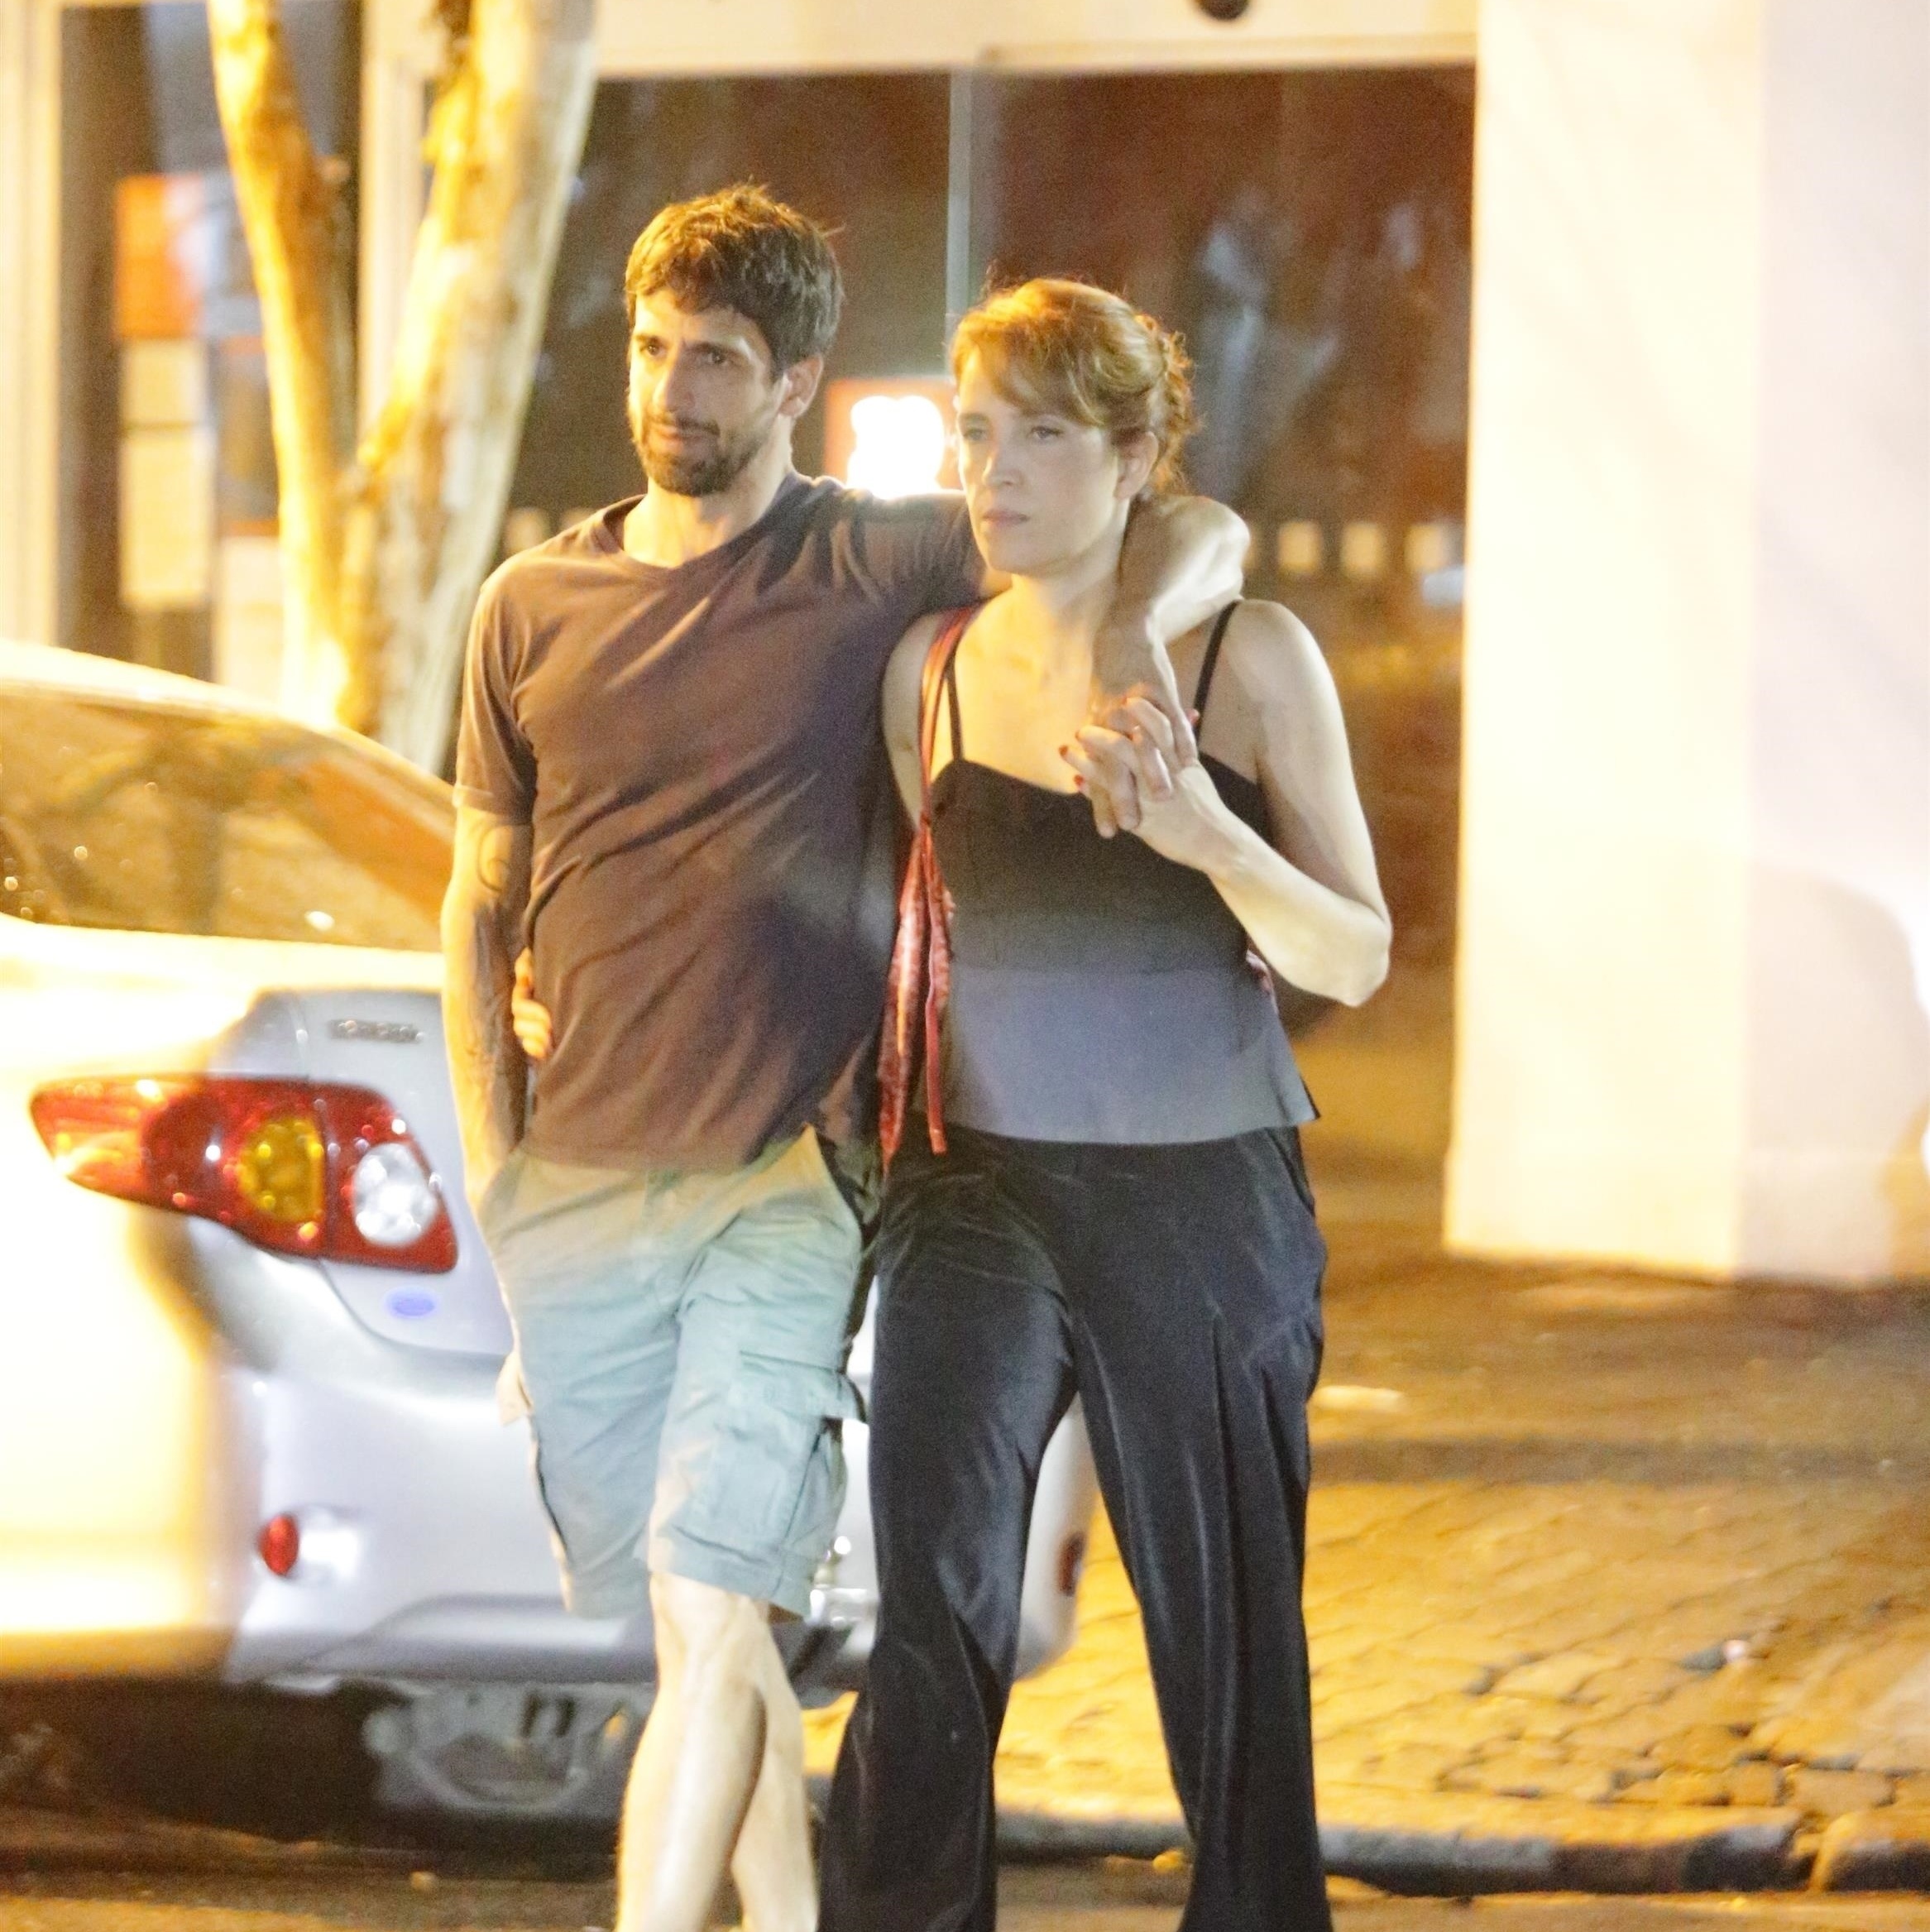 Poliana e Chico foram flagrados saindo de um barzinho no Rio de Janeiro (Foto Reprodução/AG News)